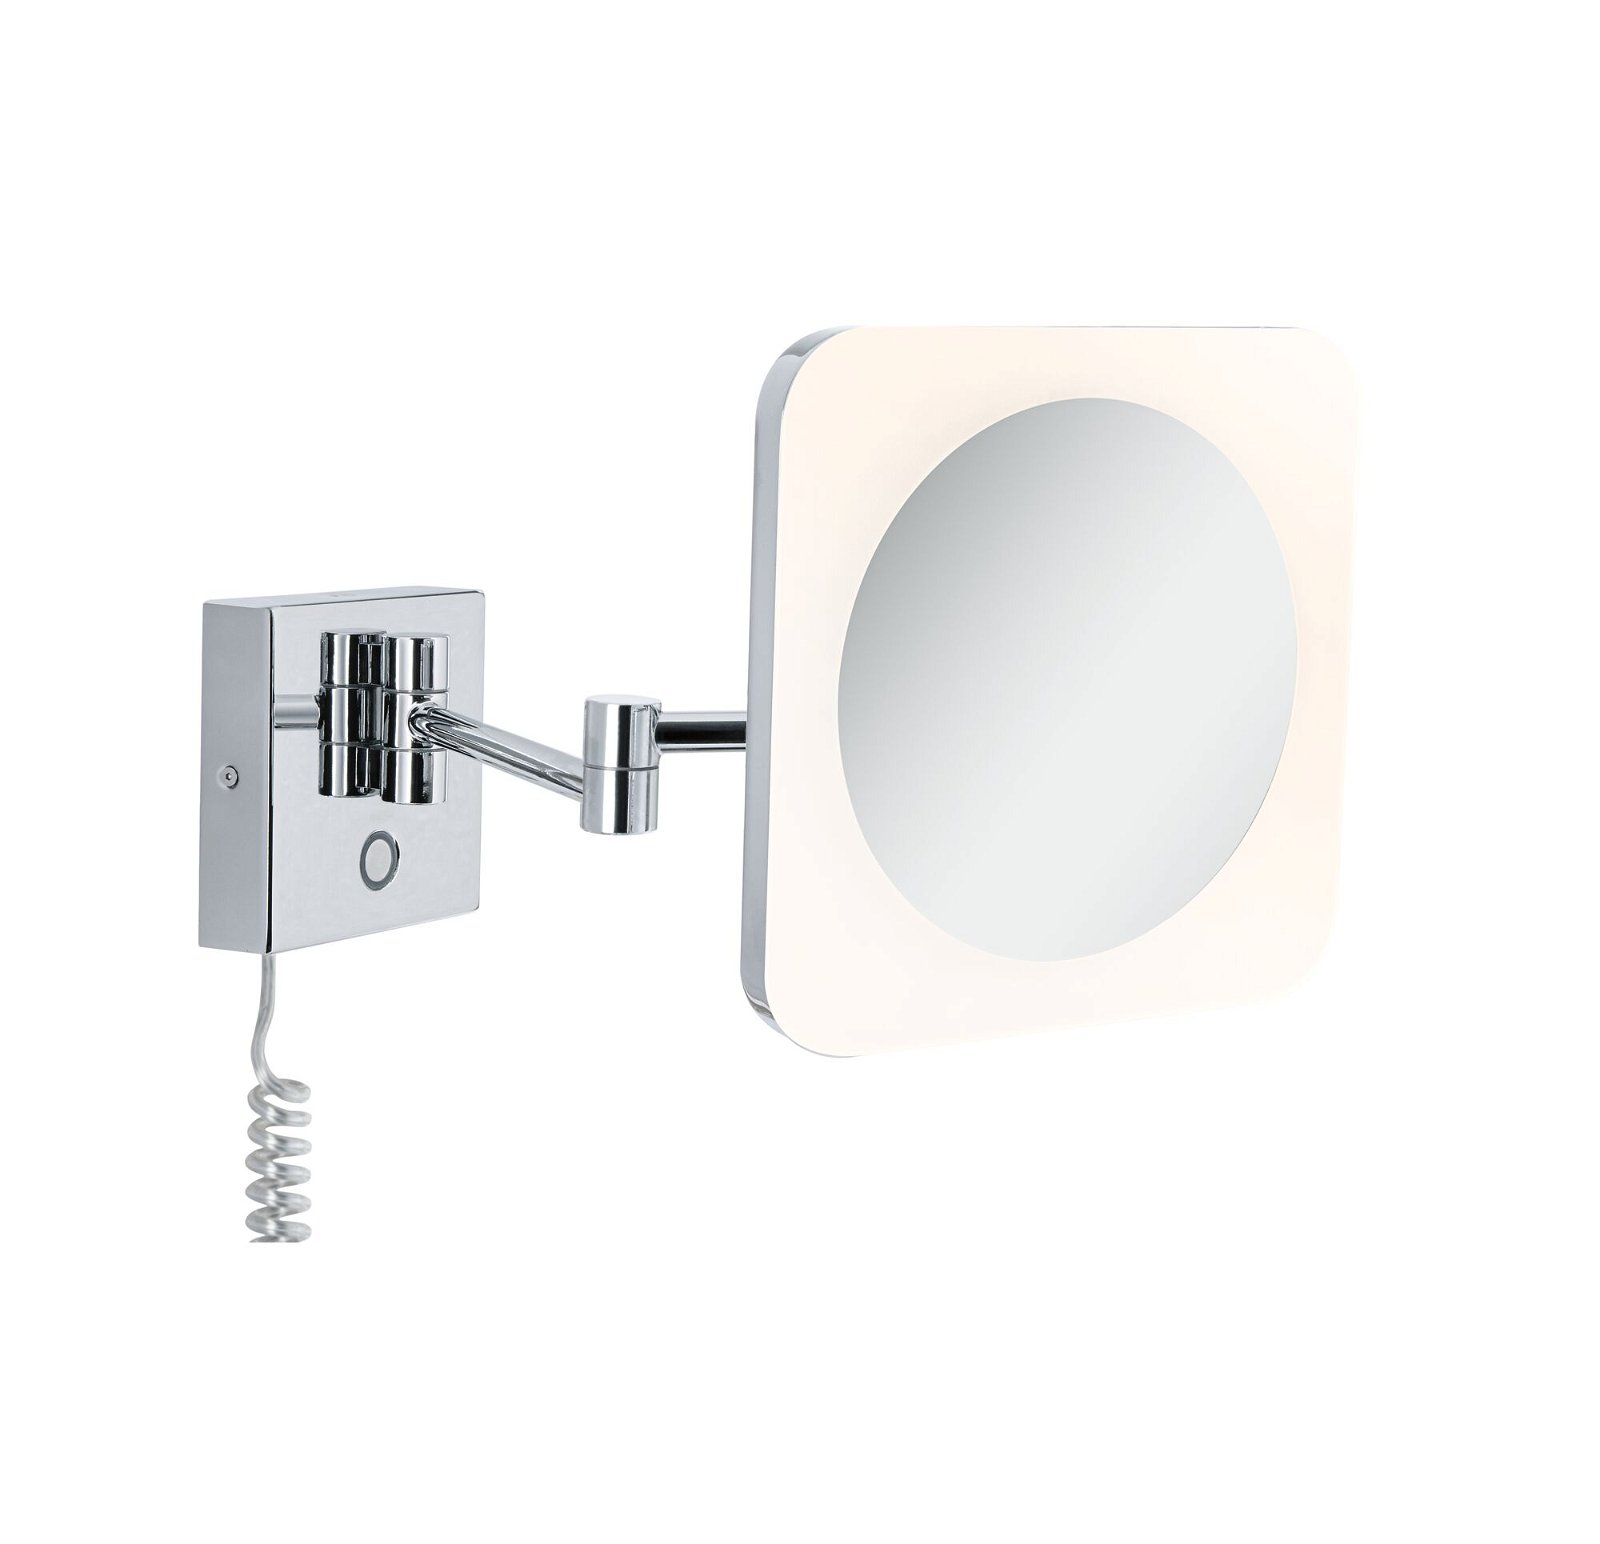 LED Kosmetikspiegel Jora IP44 White Switch 60lm 230V 3,3W Chrom/Weiß/Spiegel